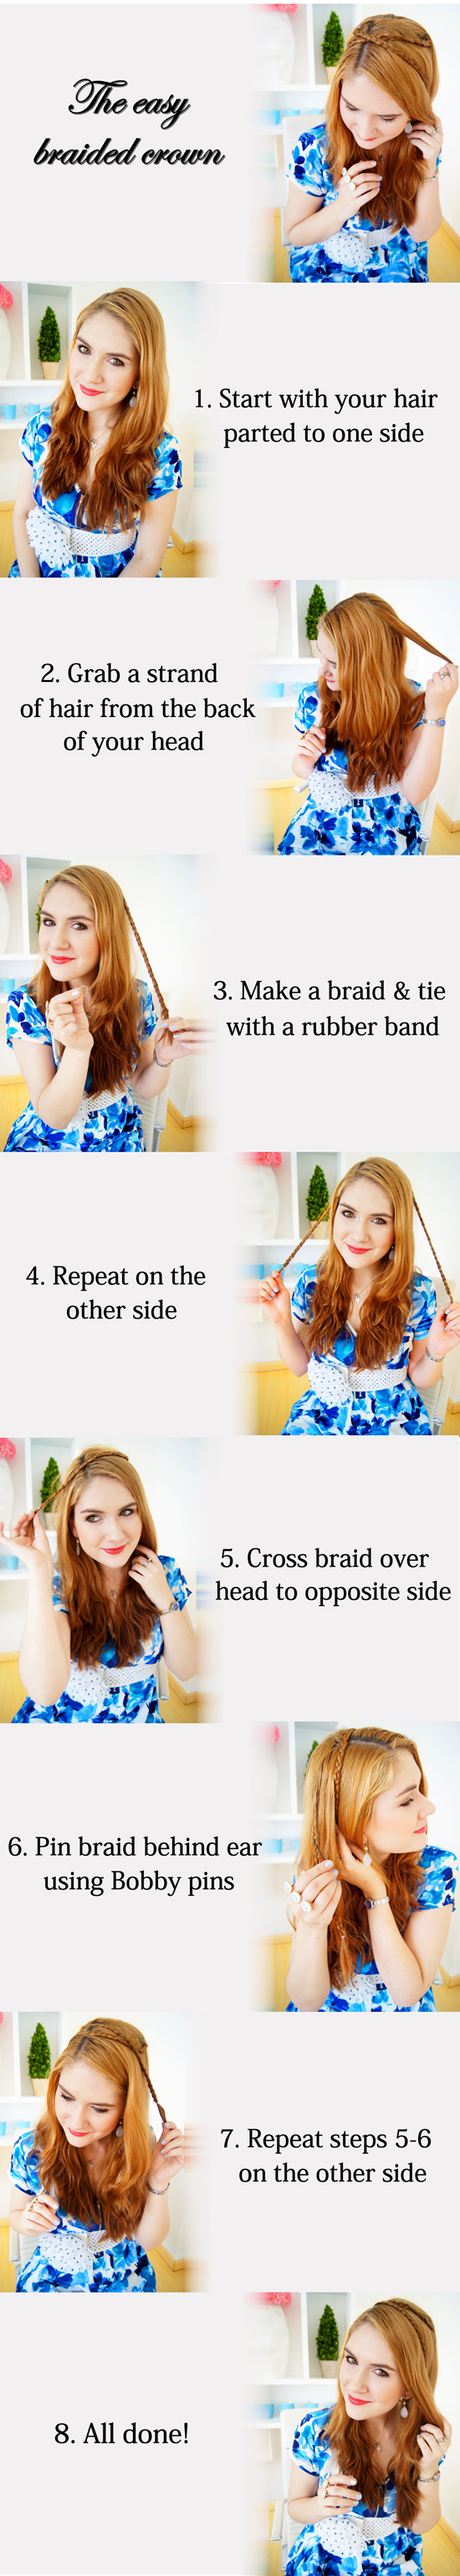 The Quick Braided Crown Hair tutorial